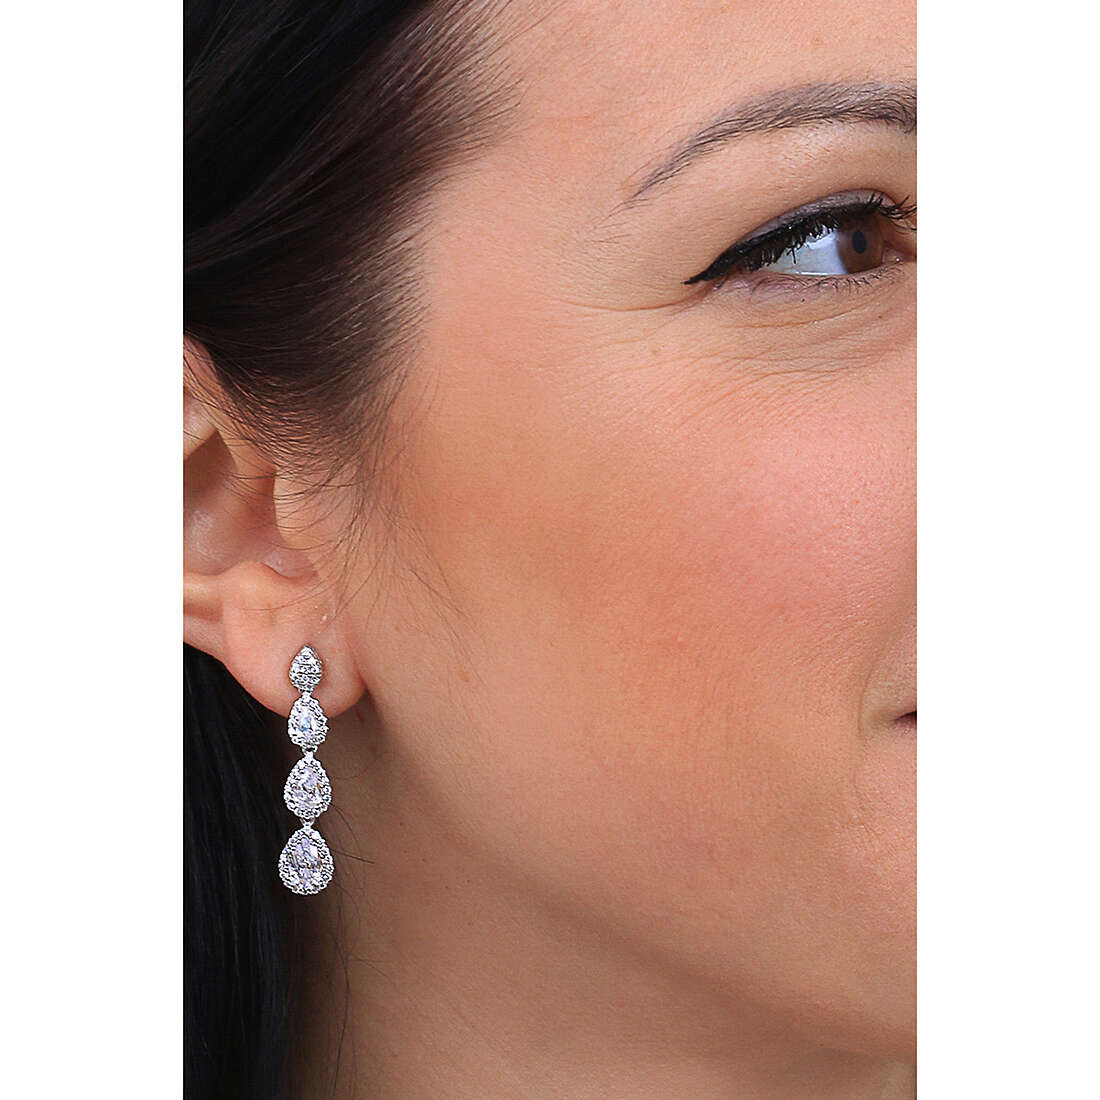 Sovrani earrings Luce woman J7132 wearing